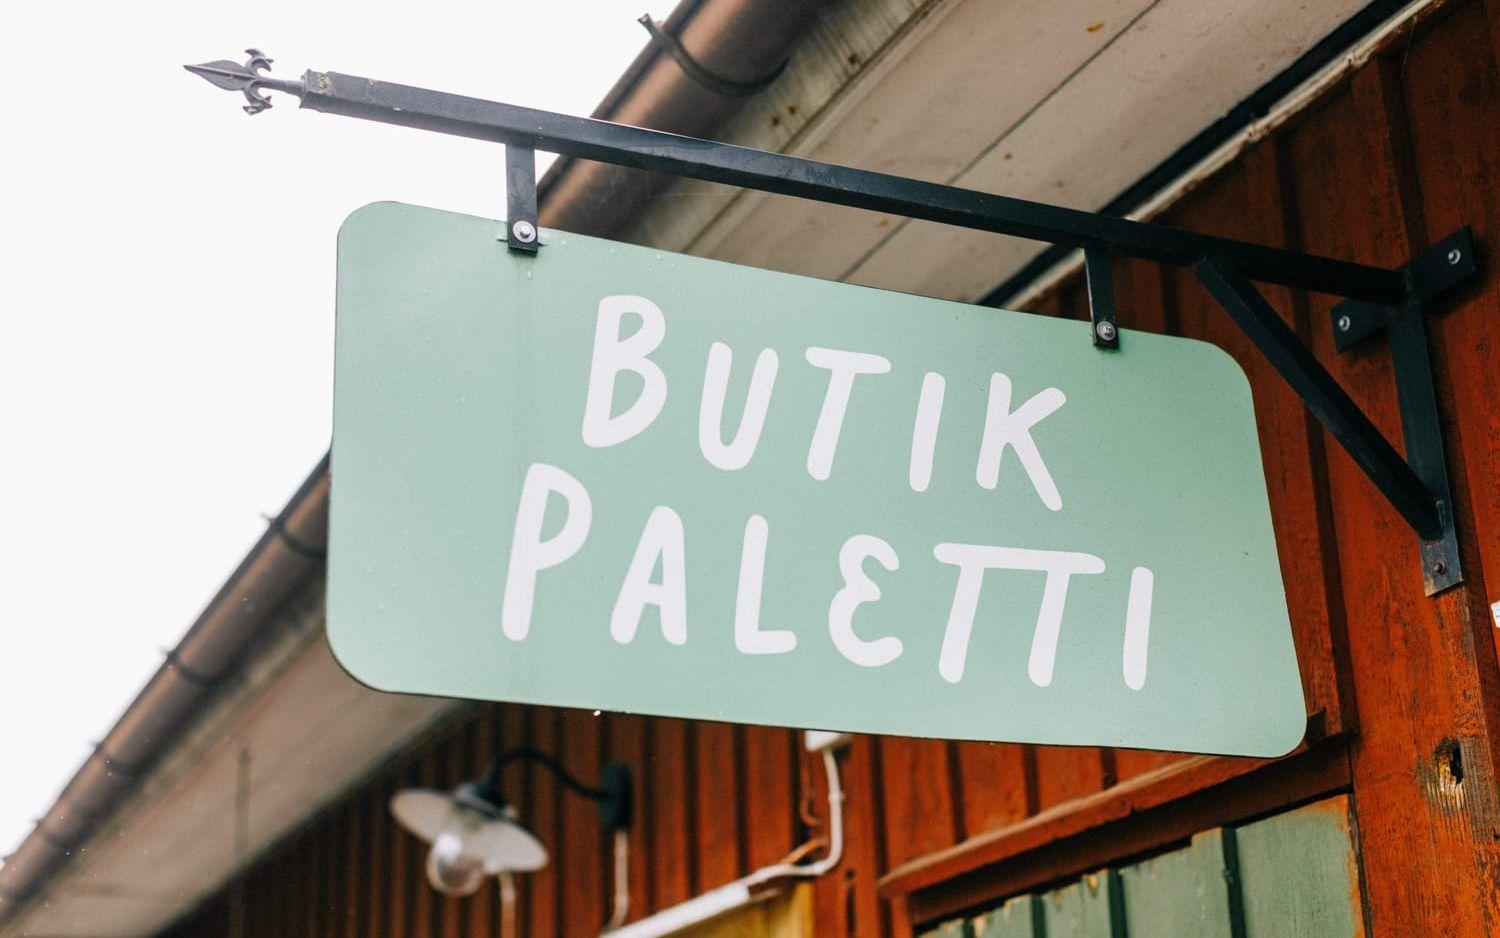 Butik Paletti startade i Unnaryd, men har även butiker i Halmstad och Eksjö. Bild: Anders Andersson